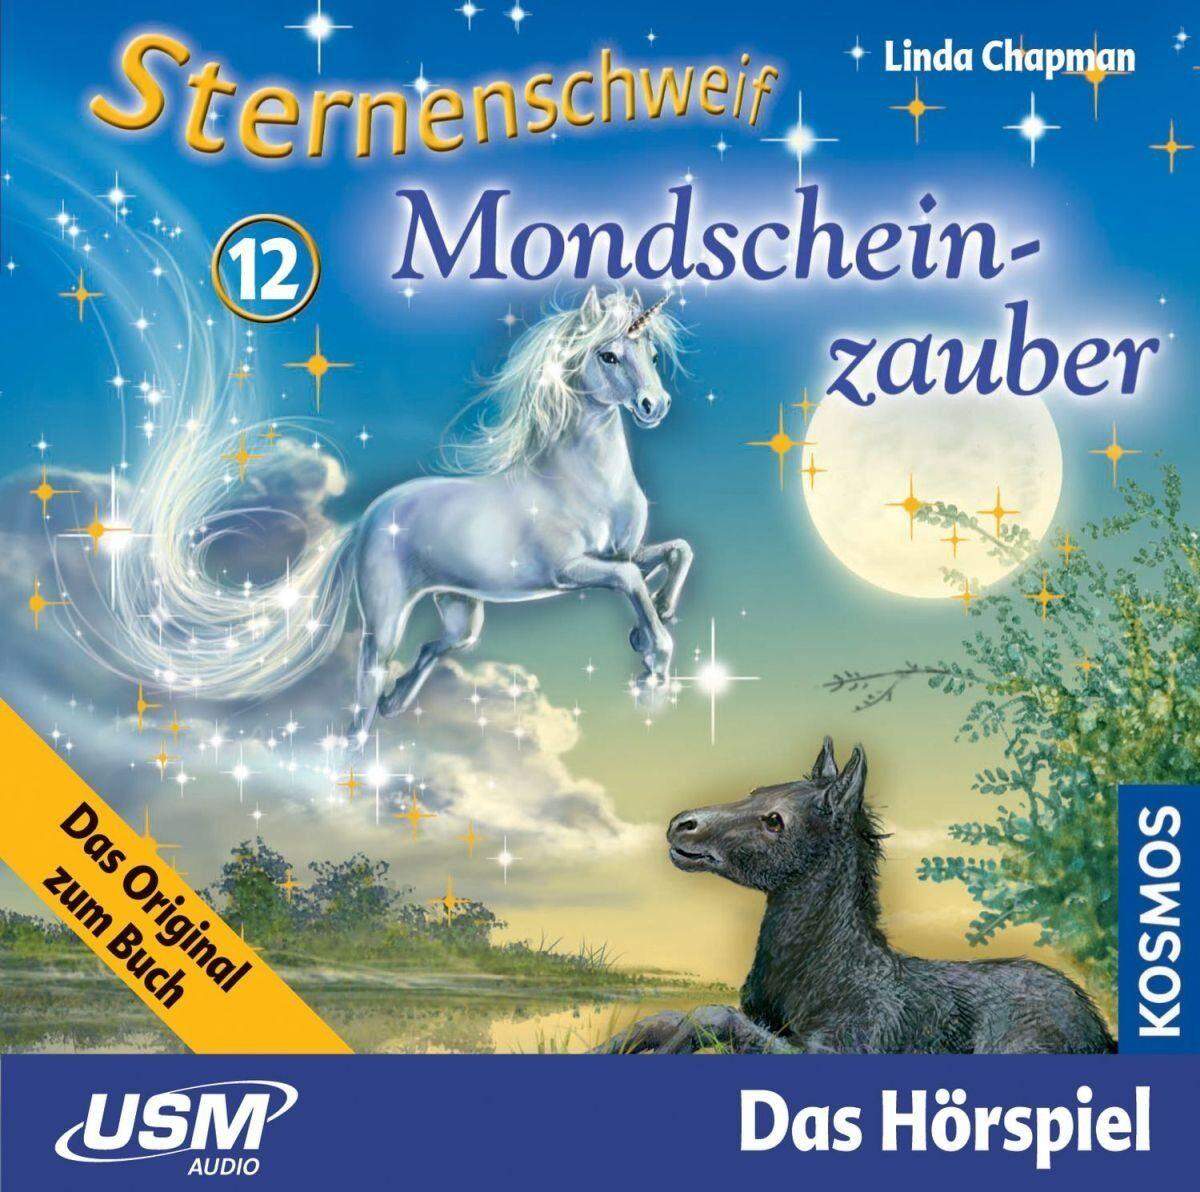 KOSMOS Hörspiel-CD Sternenschweif 12 Mondscheinzauber